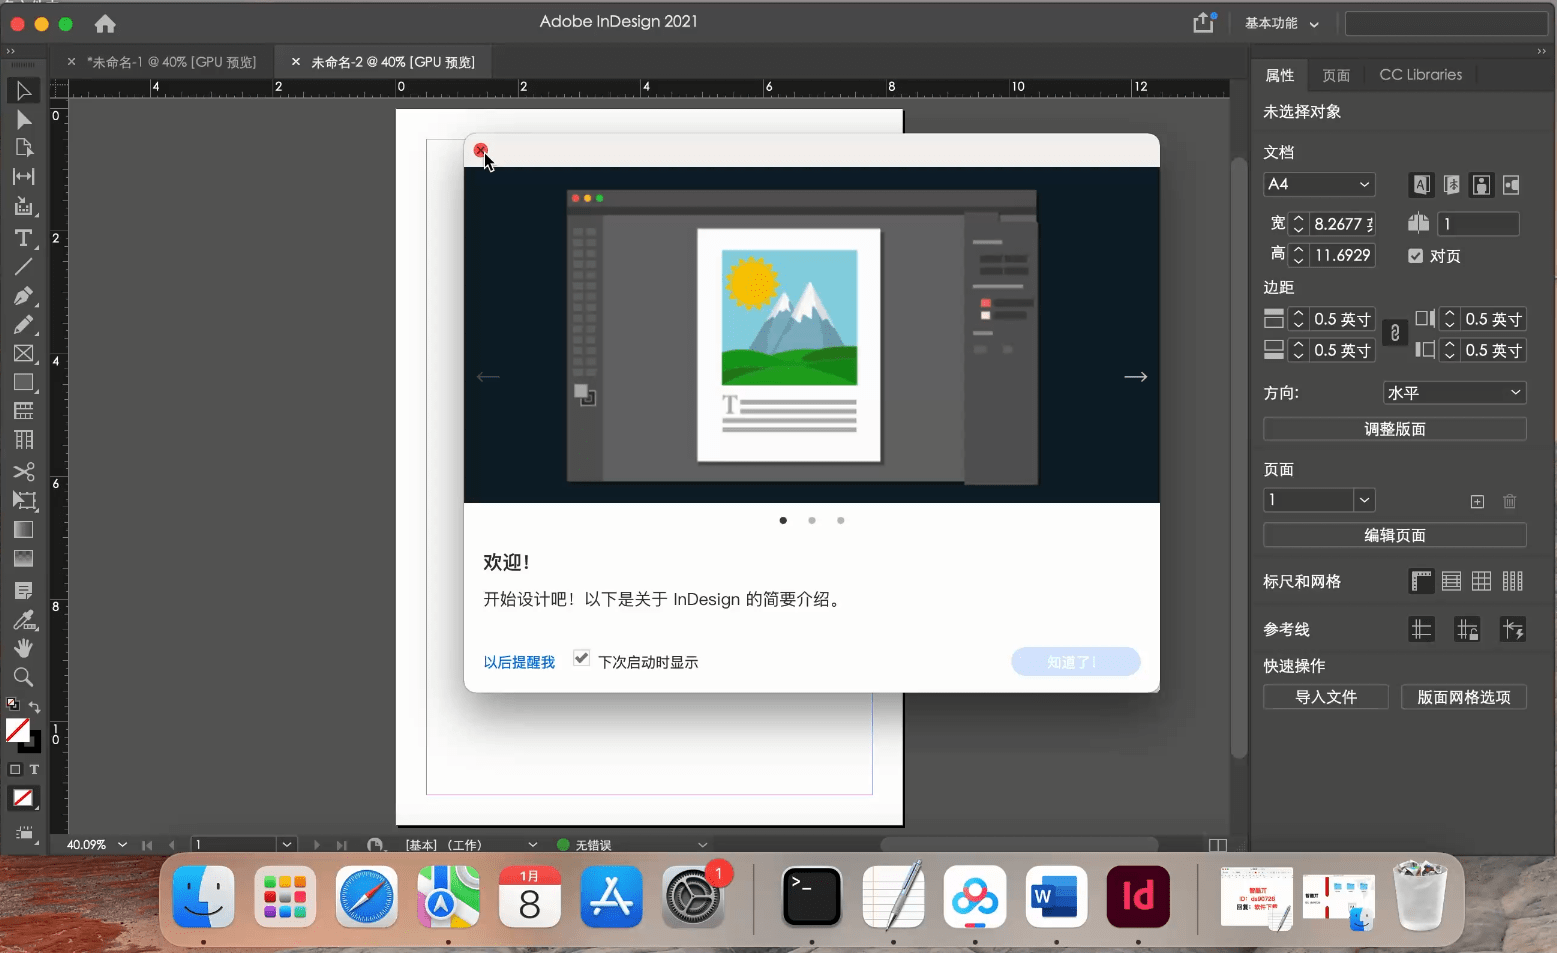 苹果版绿幕助手下载教程:苹果Mac ID软件2022版本InDesign2021中文下载、安装教程，支持M1 中文版直装